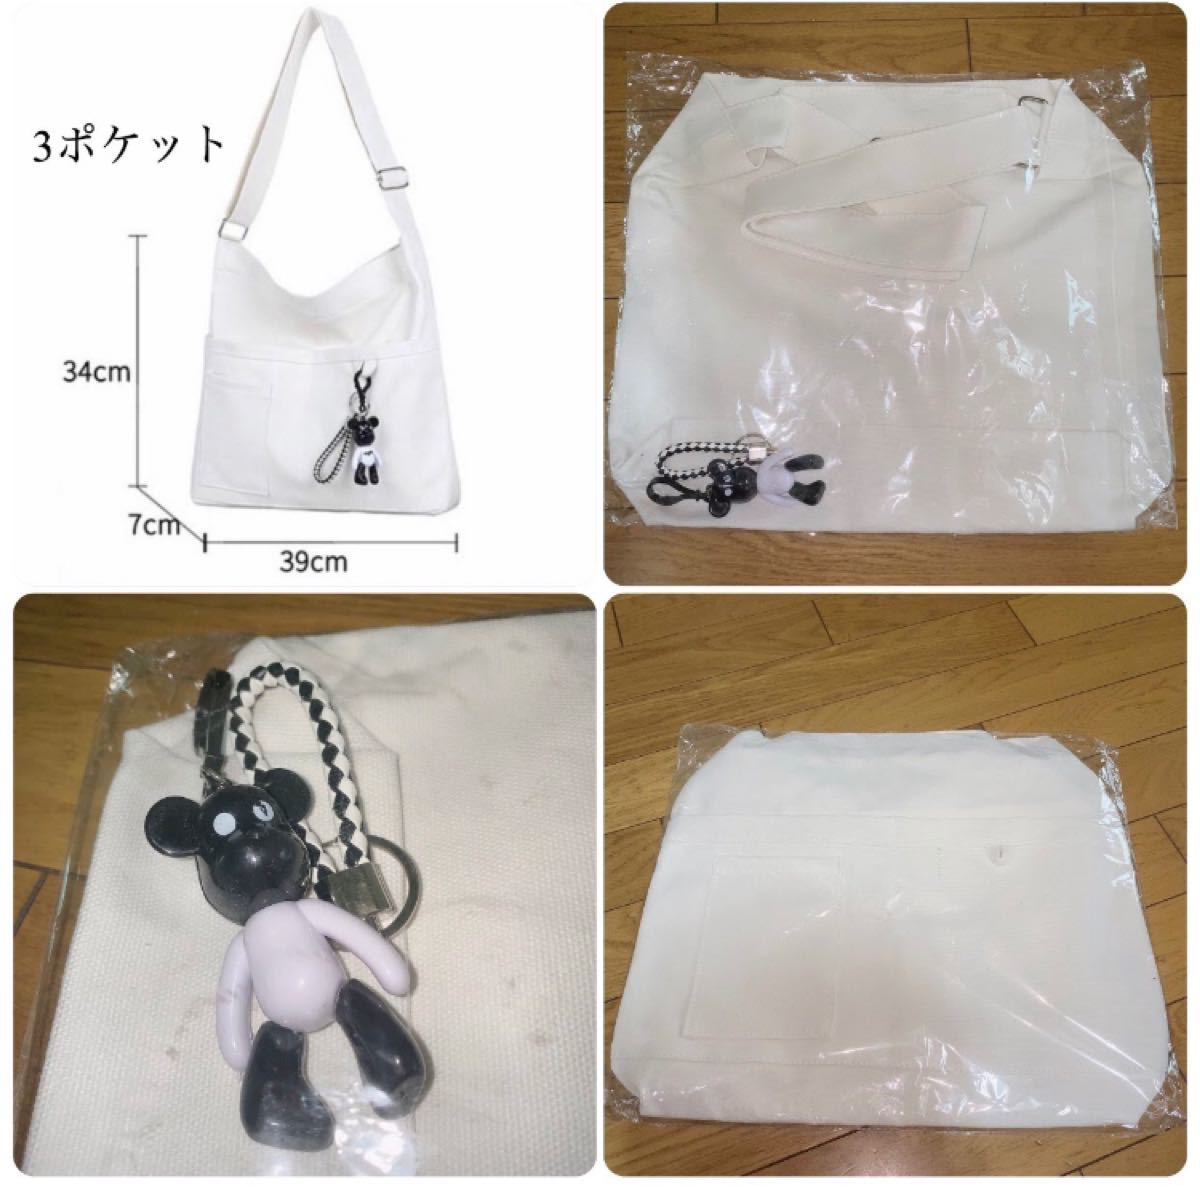 新品未使用 トートバッグ ショルダーバッグ 大容量 白 キャンパストートバッグ ボディバッグ 帆布バッグ 韓国ファッション 